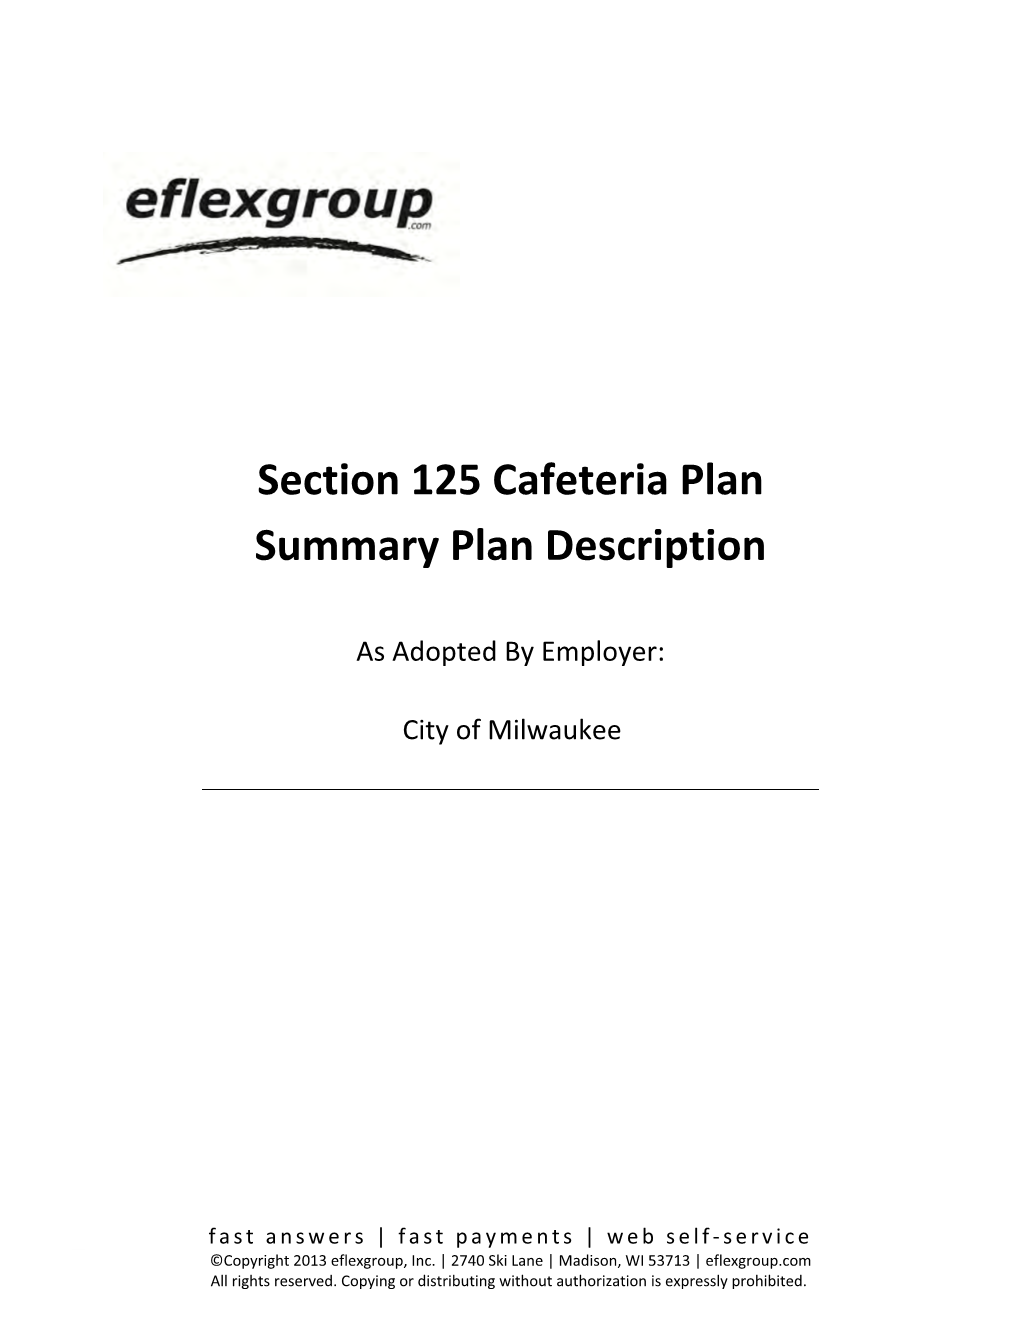 Section 125 Cafeteria Plan Summary Plan Description